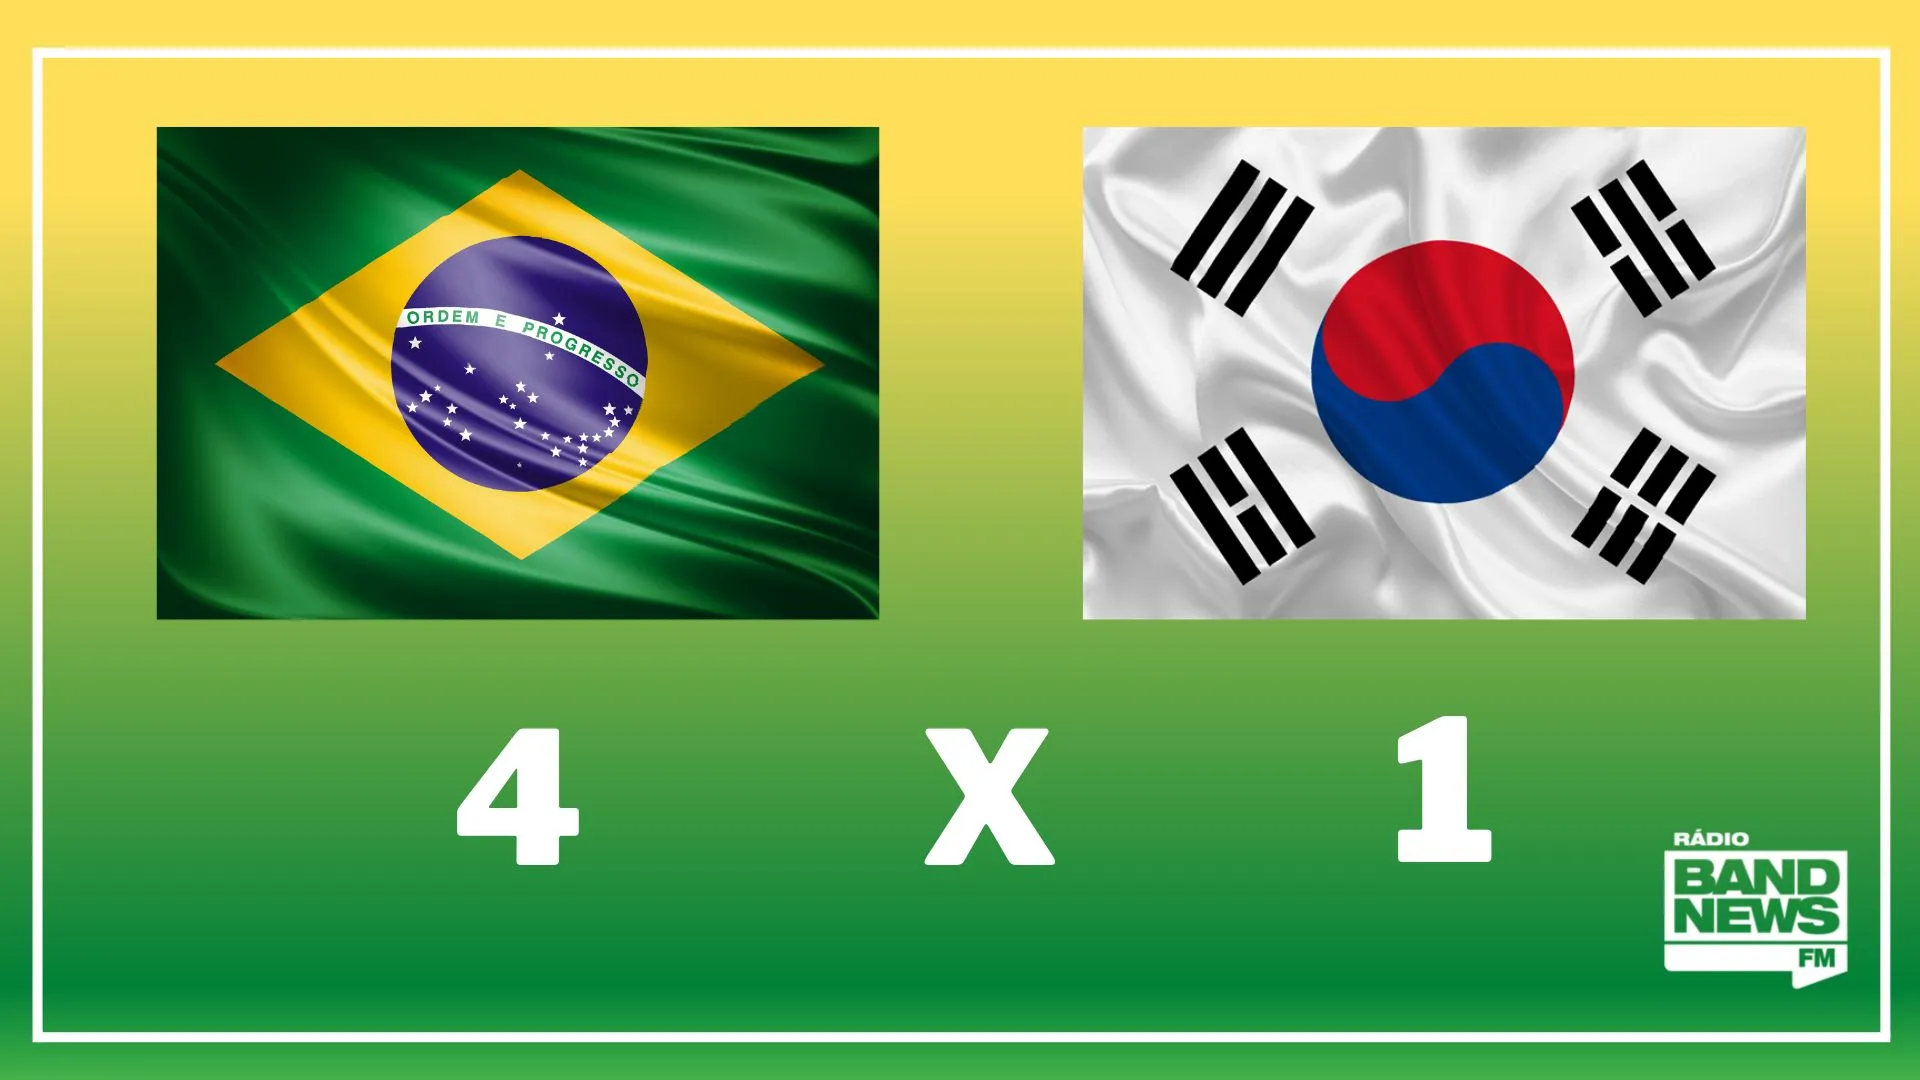 Memes da goleada do Brasil em cima da Coreia divertem torcedores